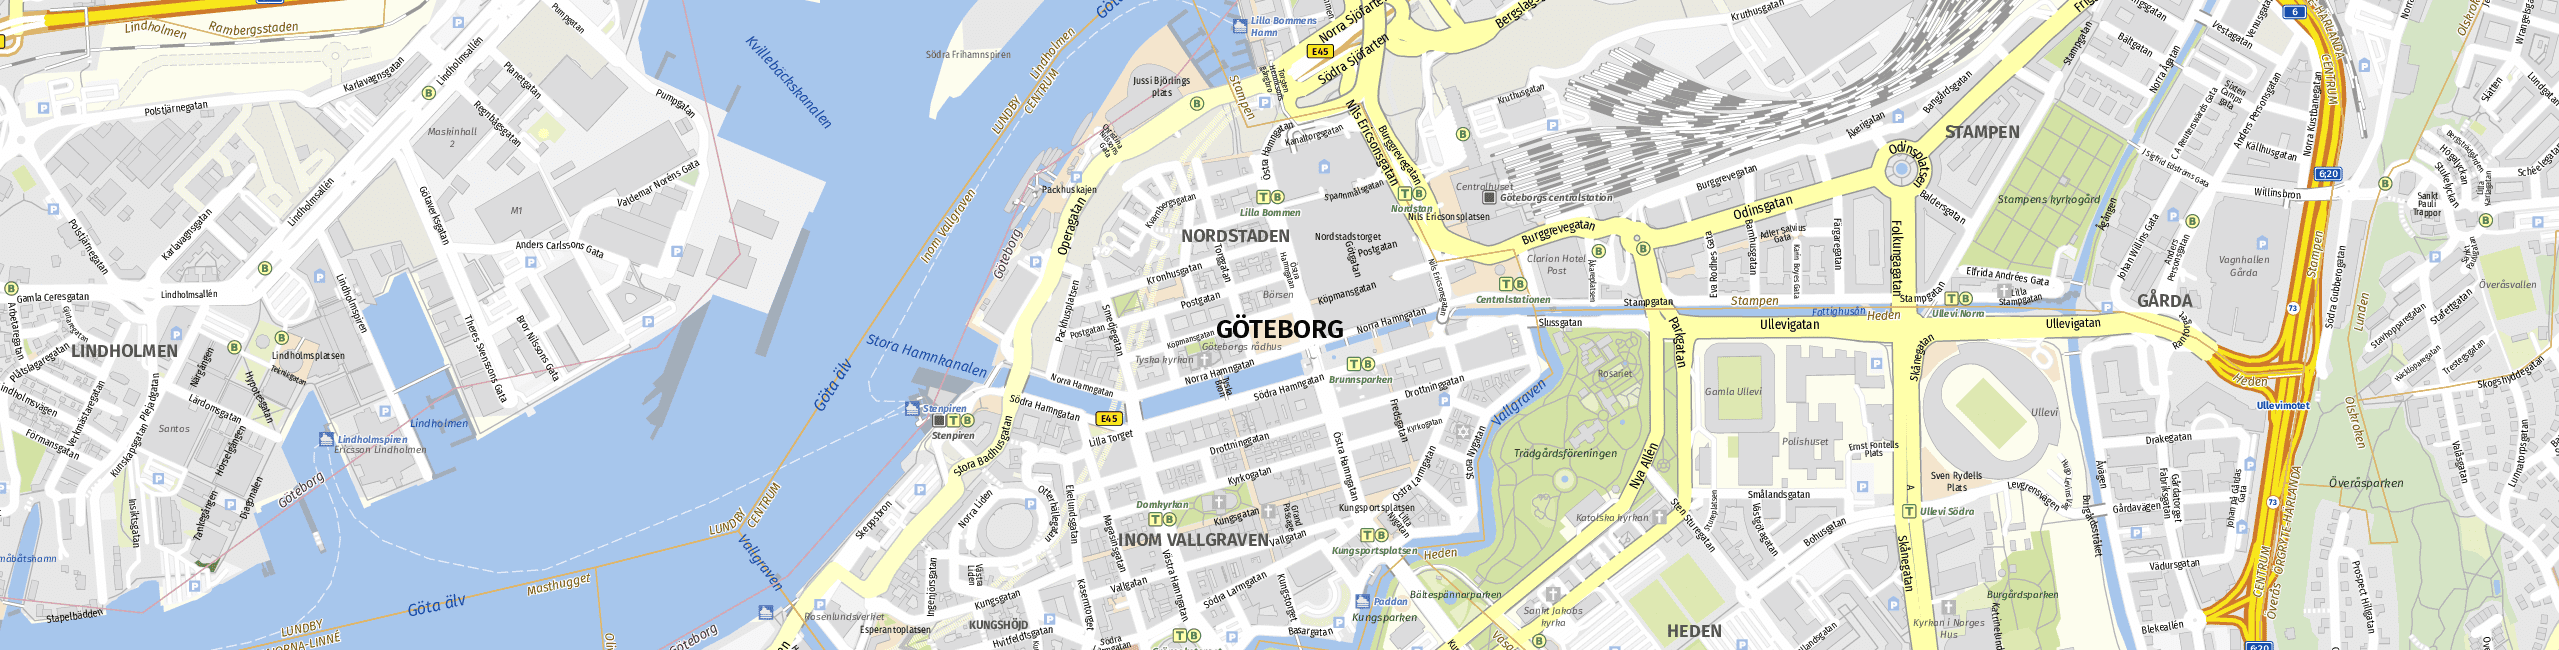 Stadtplan Göteborg zum Downloaden.